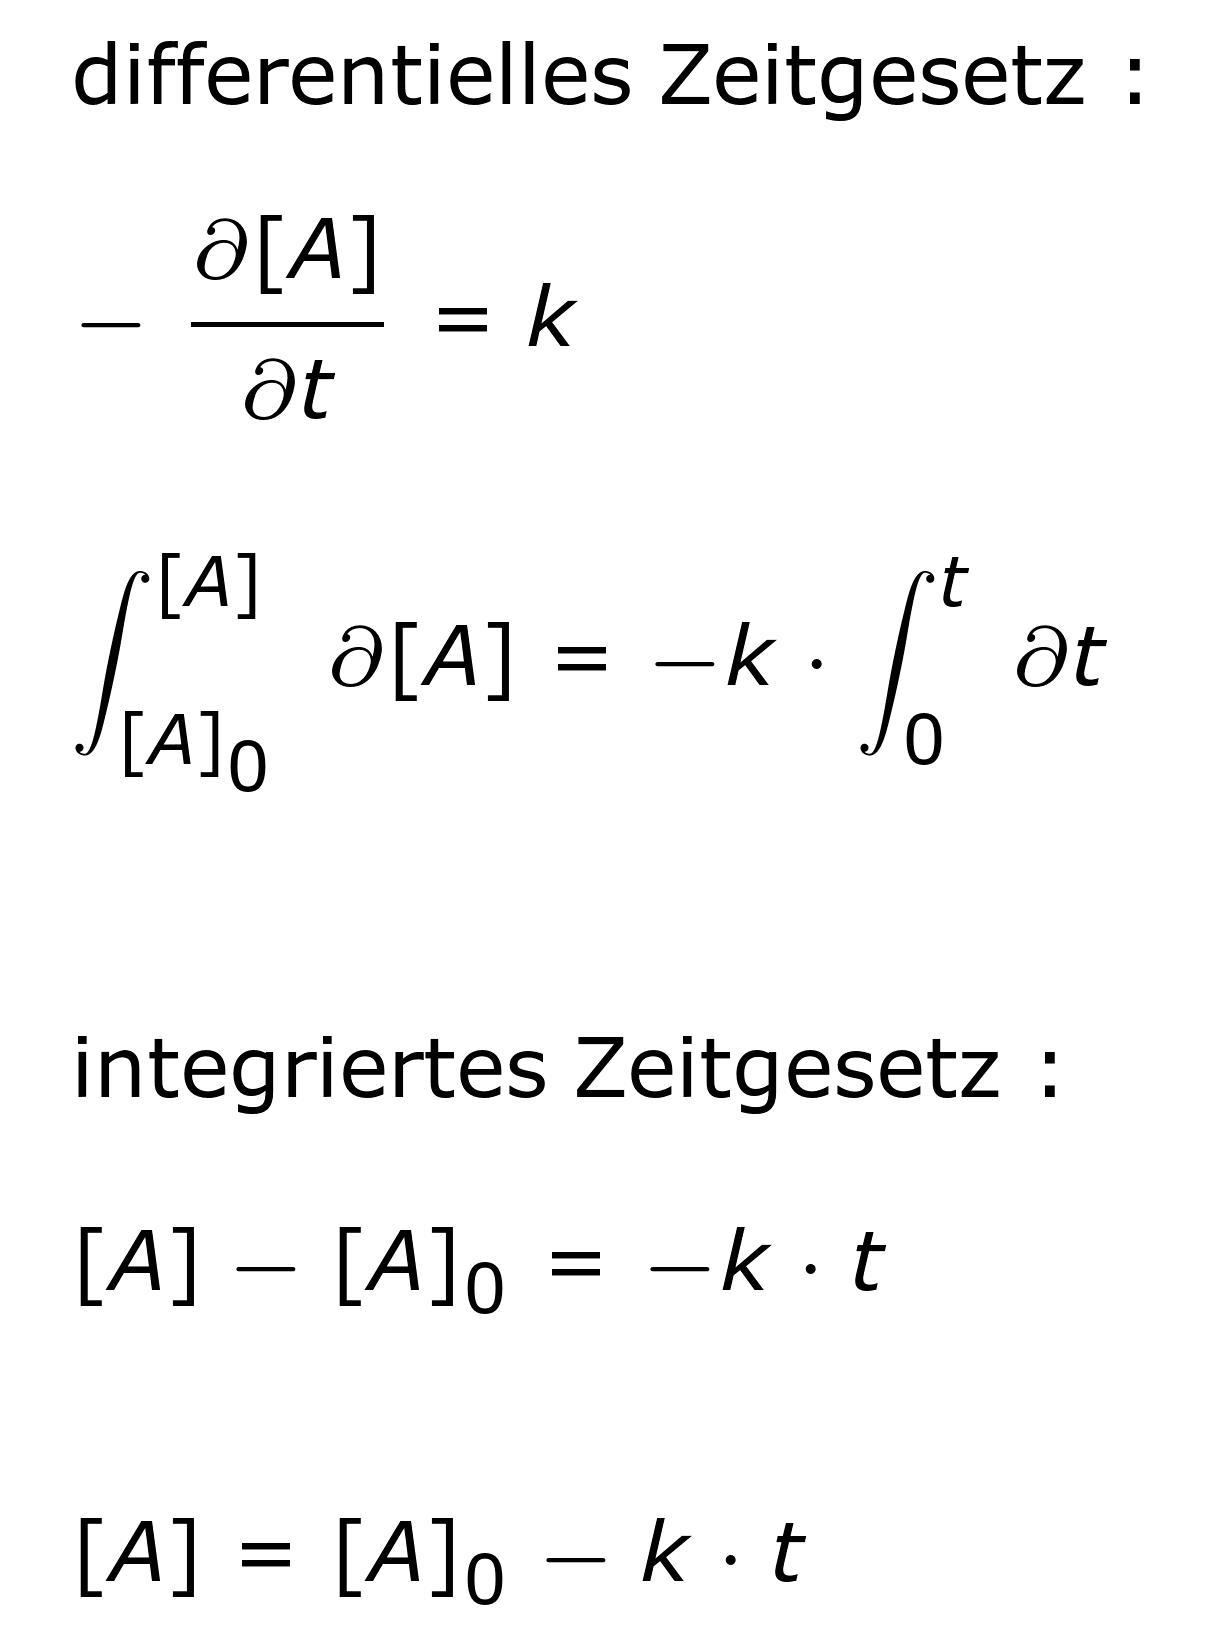 Zeitgesetz der Reaktionskinetik 0. Ordnung